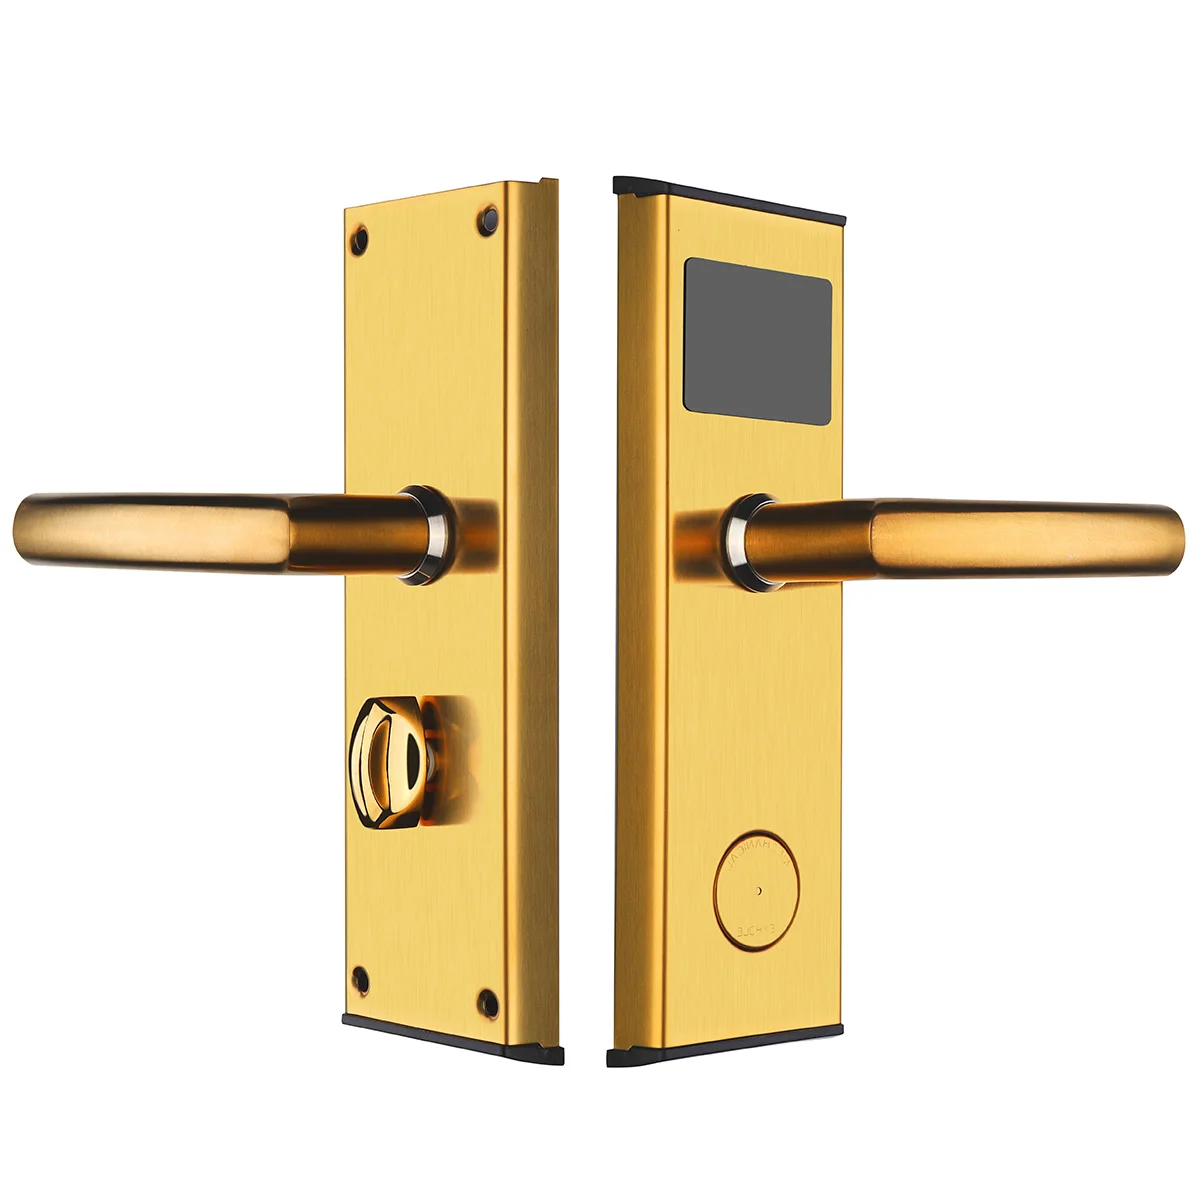 Safurance цифровой карточный замок Безопасность Интеллектуальная RFID цифровая карта ключ разблокировка нержавеющая сталь замок двери гостиницы замок двери - Цвет: Gold Right Side